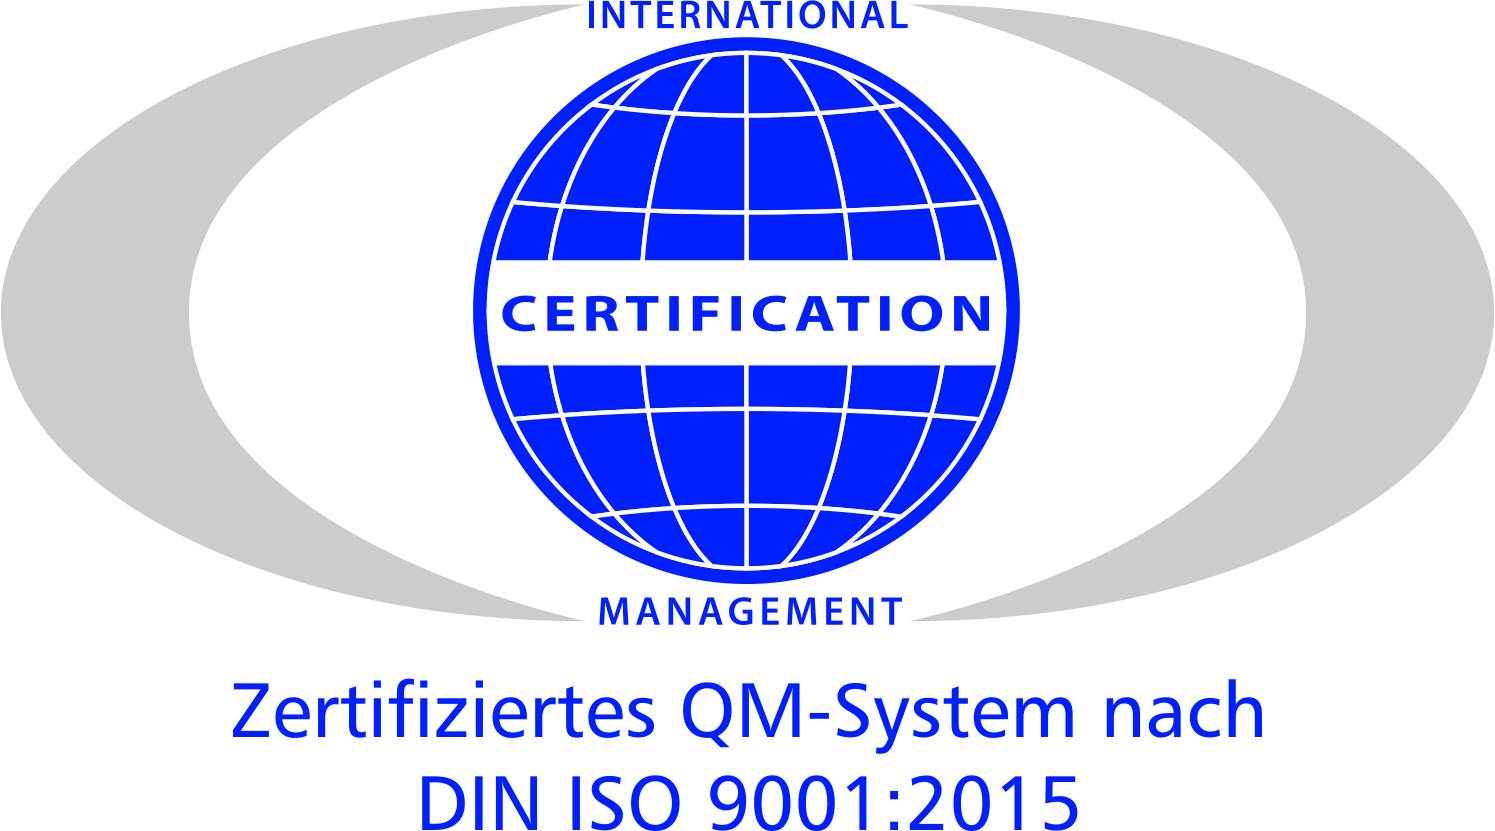 Zertifiziertes QM-System nach DIN ISO 9001:2015